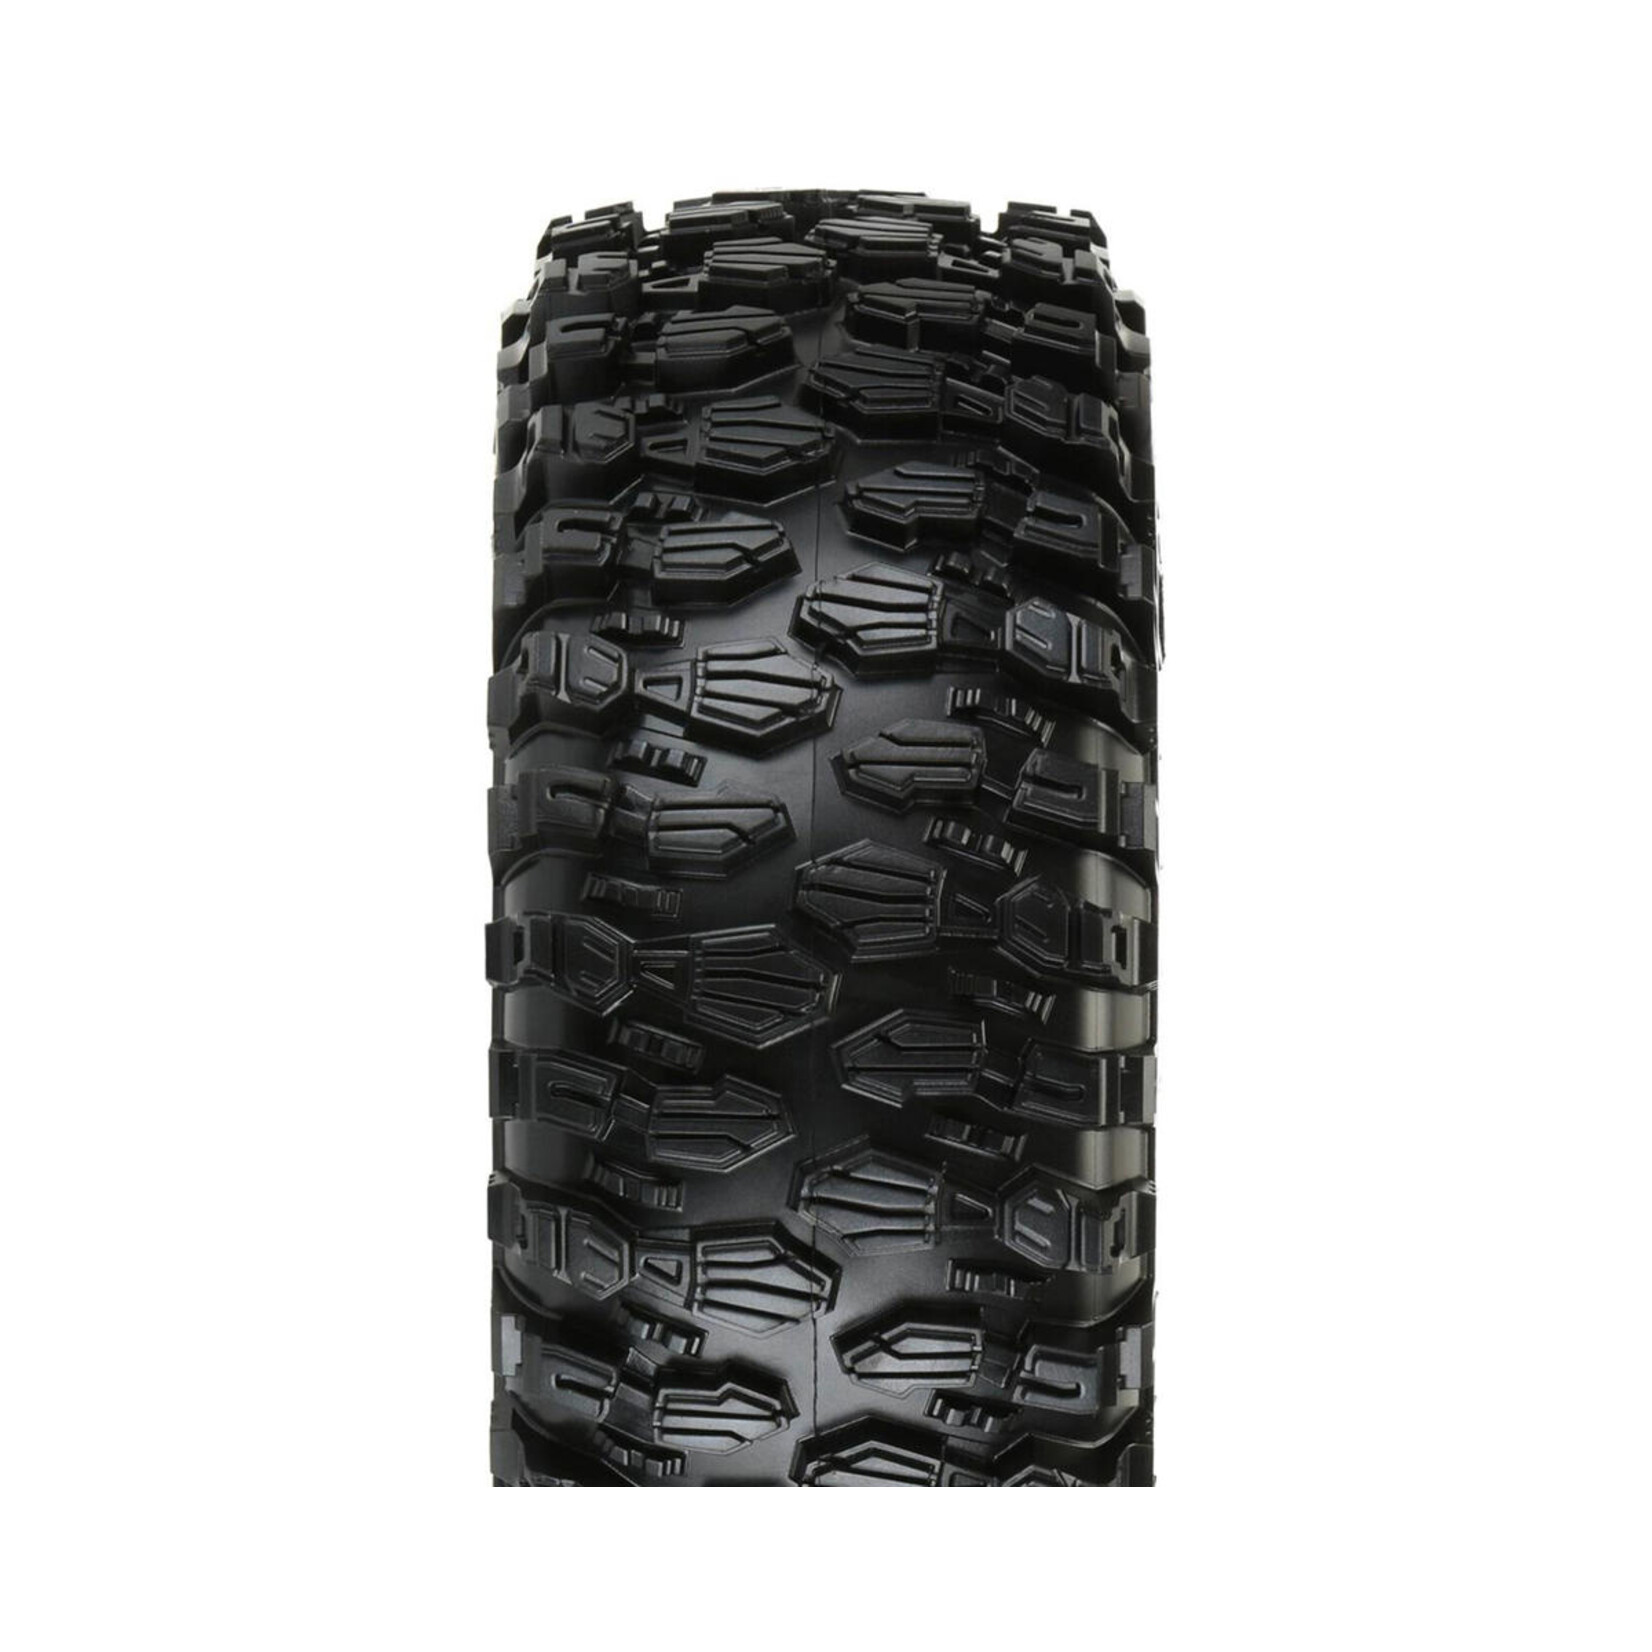 Pro-Line Pro-Line Hyrax 2.2" Rock Terrain Crawler Tires w/Memory Foam (2) (G8) #10132-03